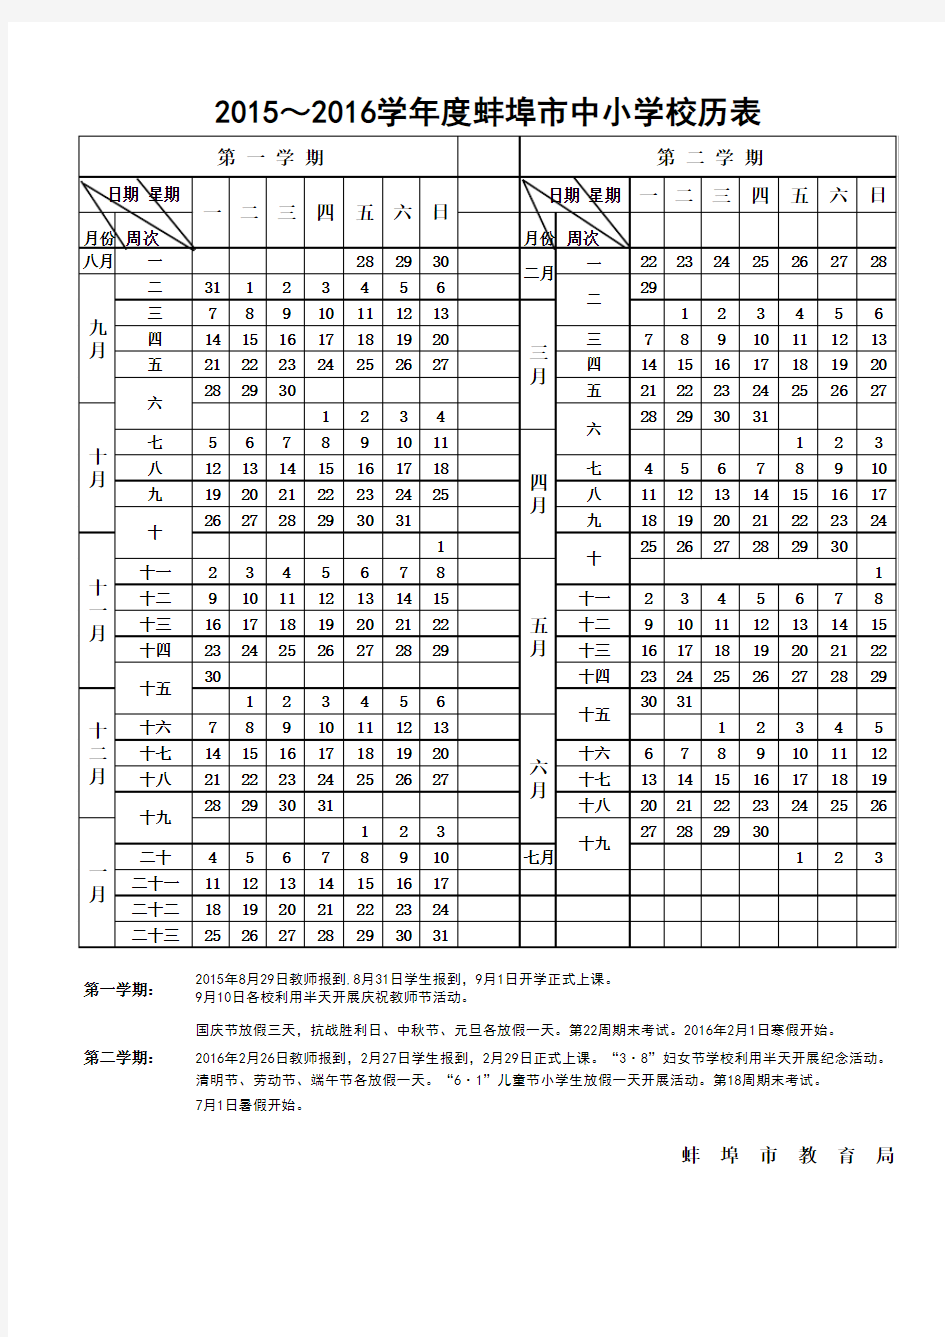 2015-2016学年度蚌埠市中小学校历表